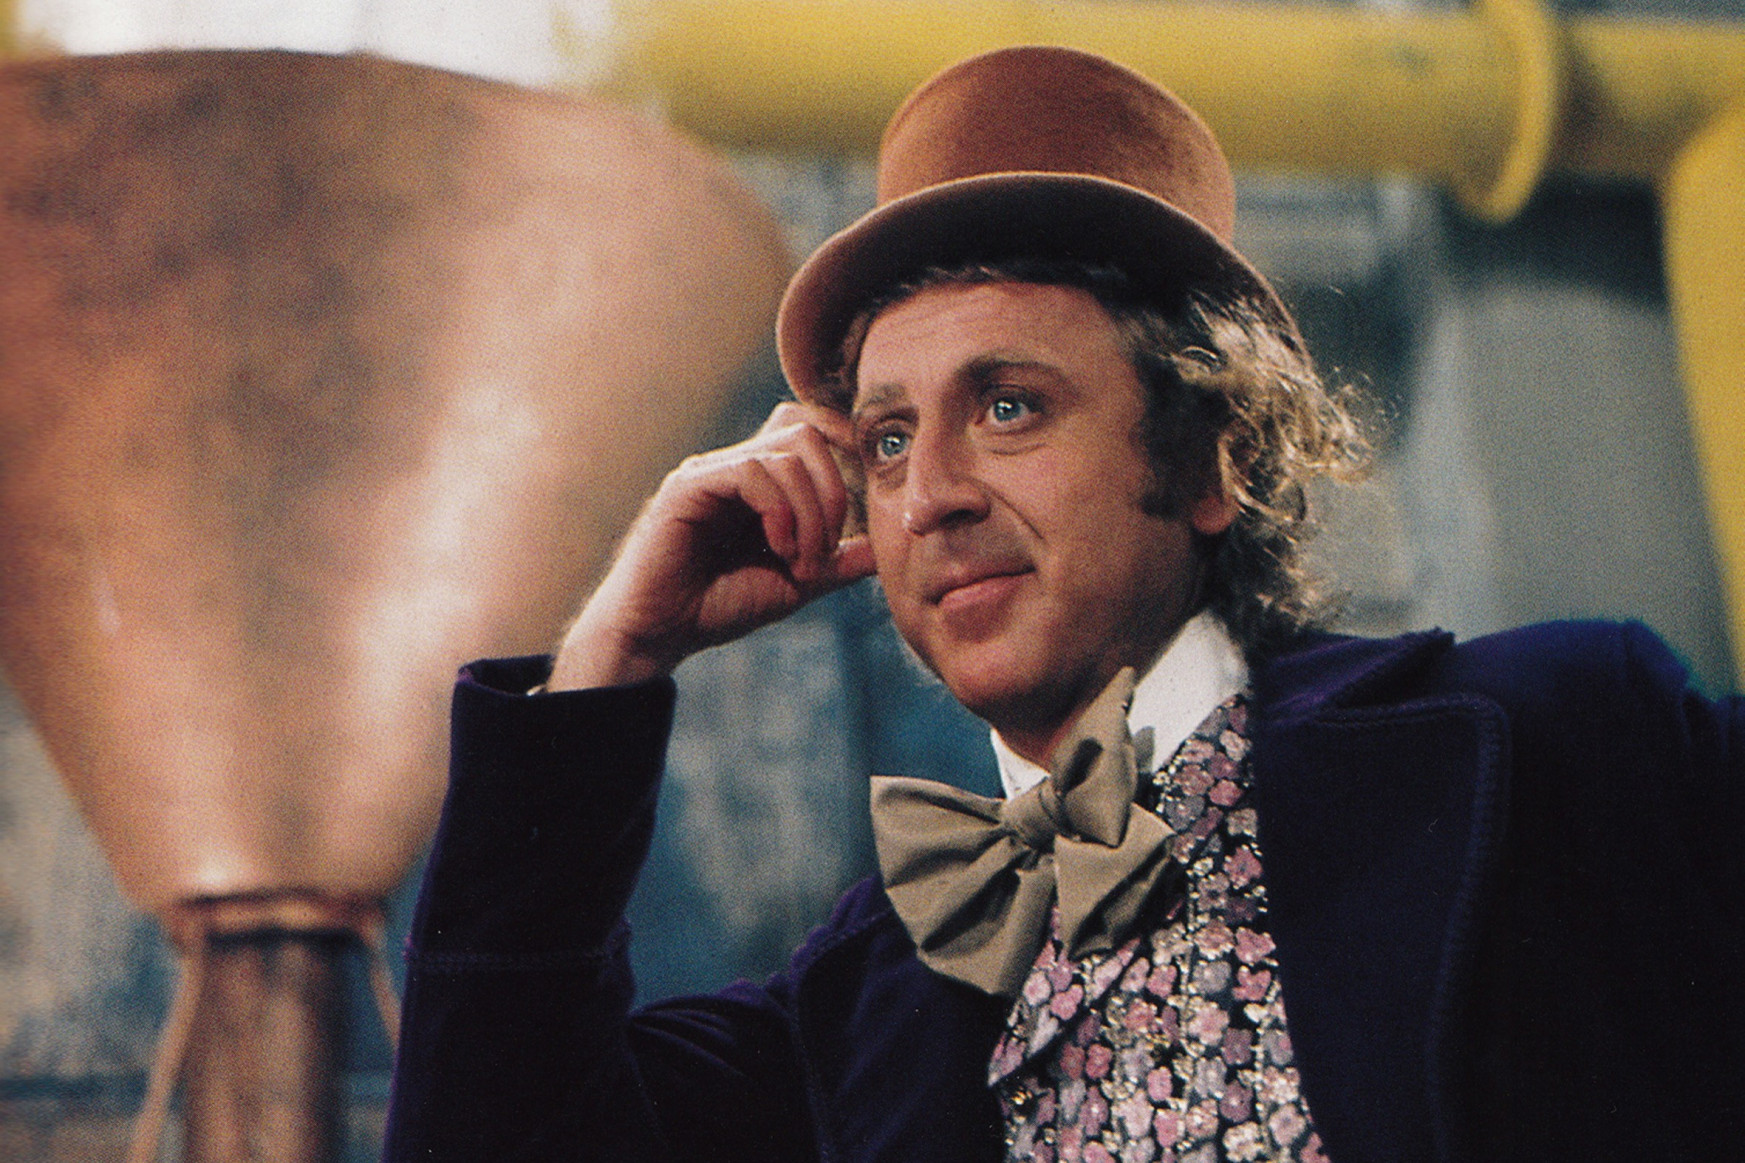 Két év múlva érkezik a film Willy Wonka csokigyárosról